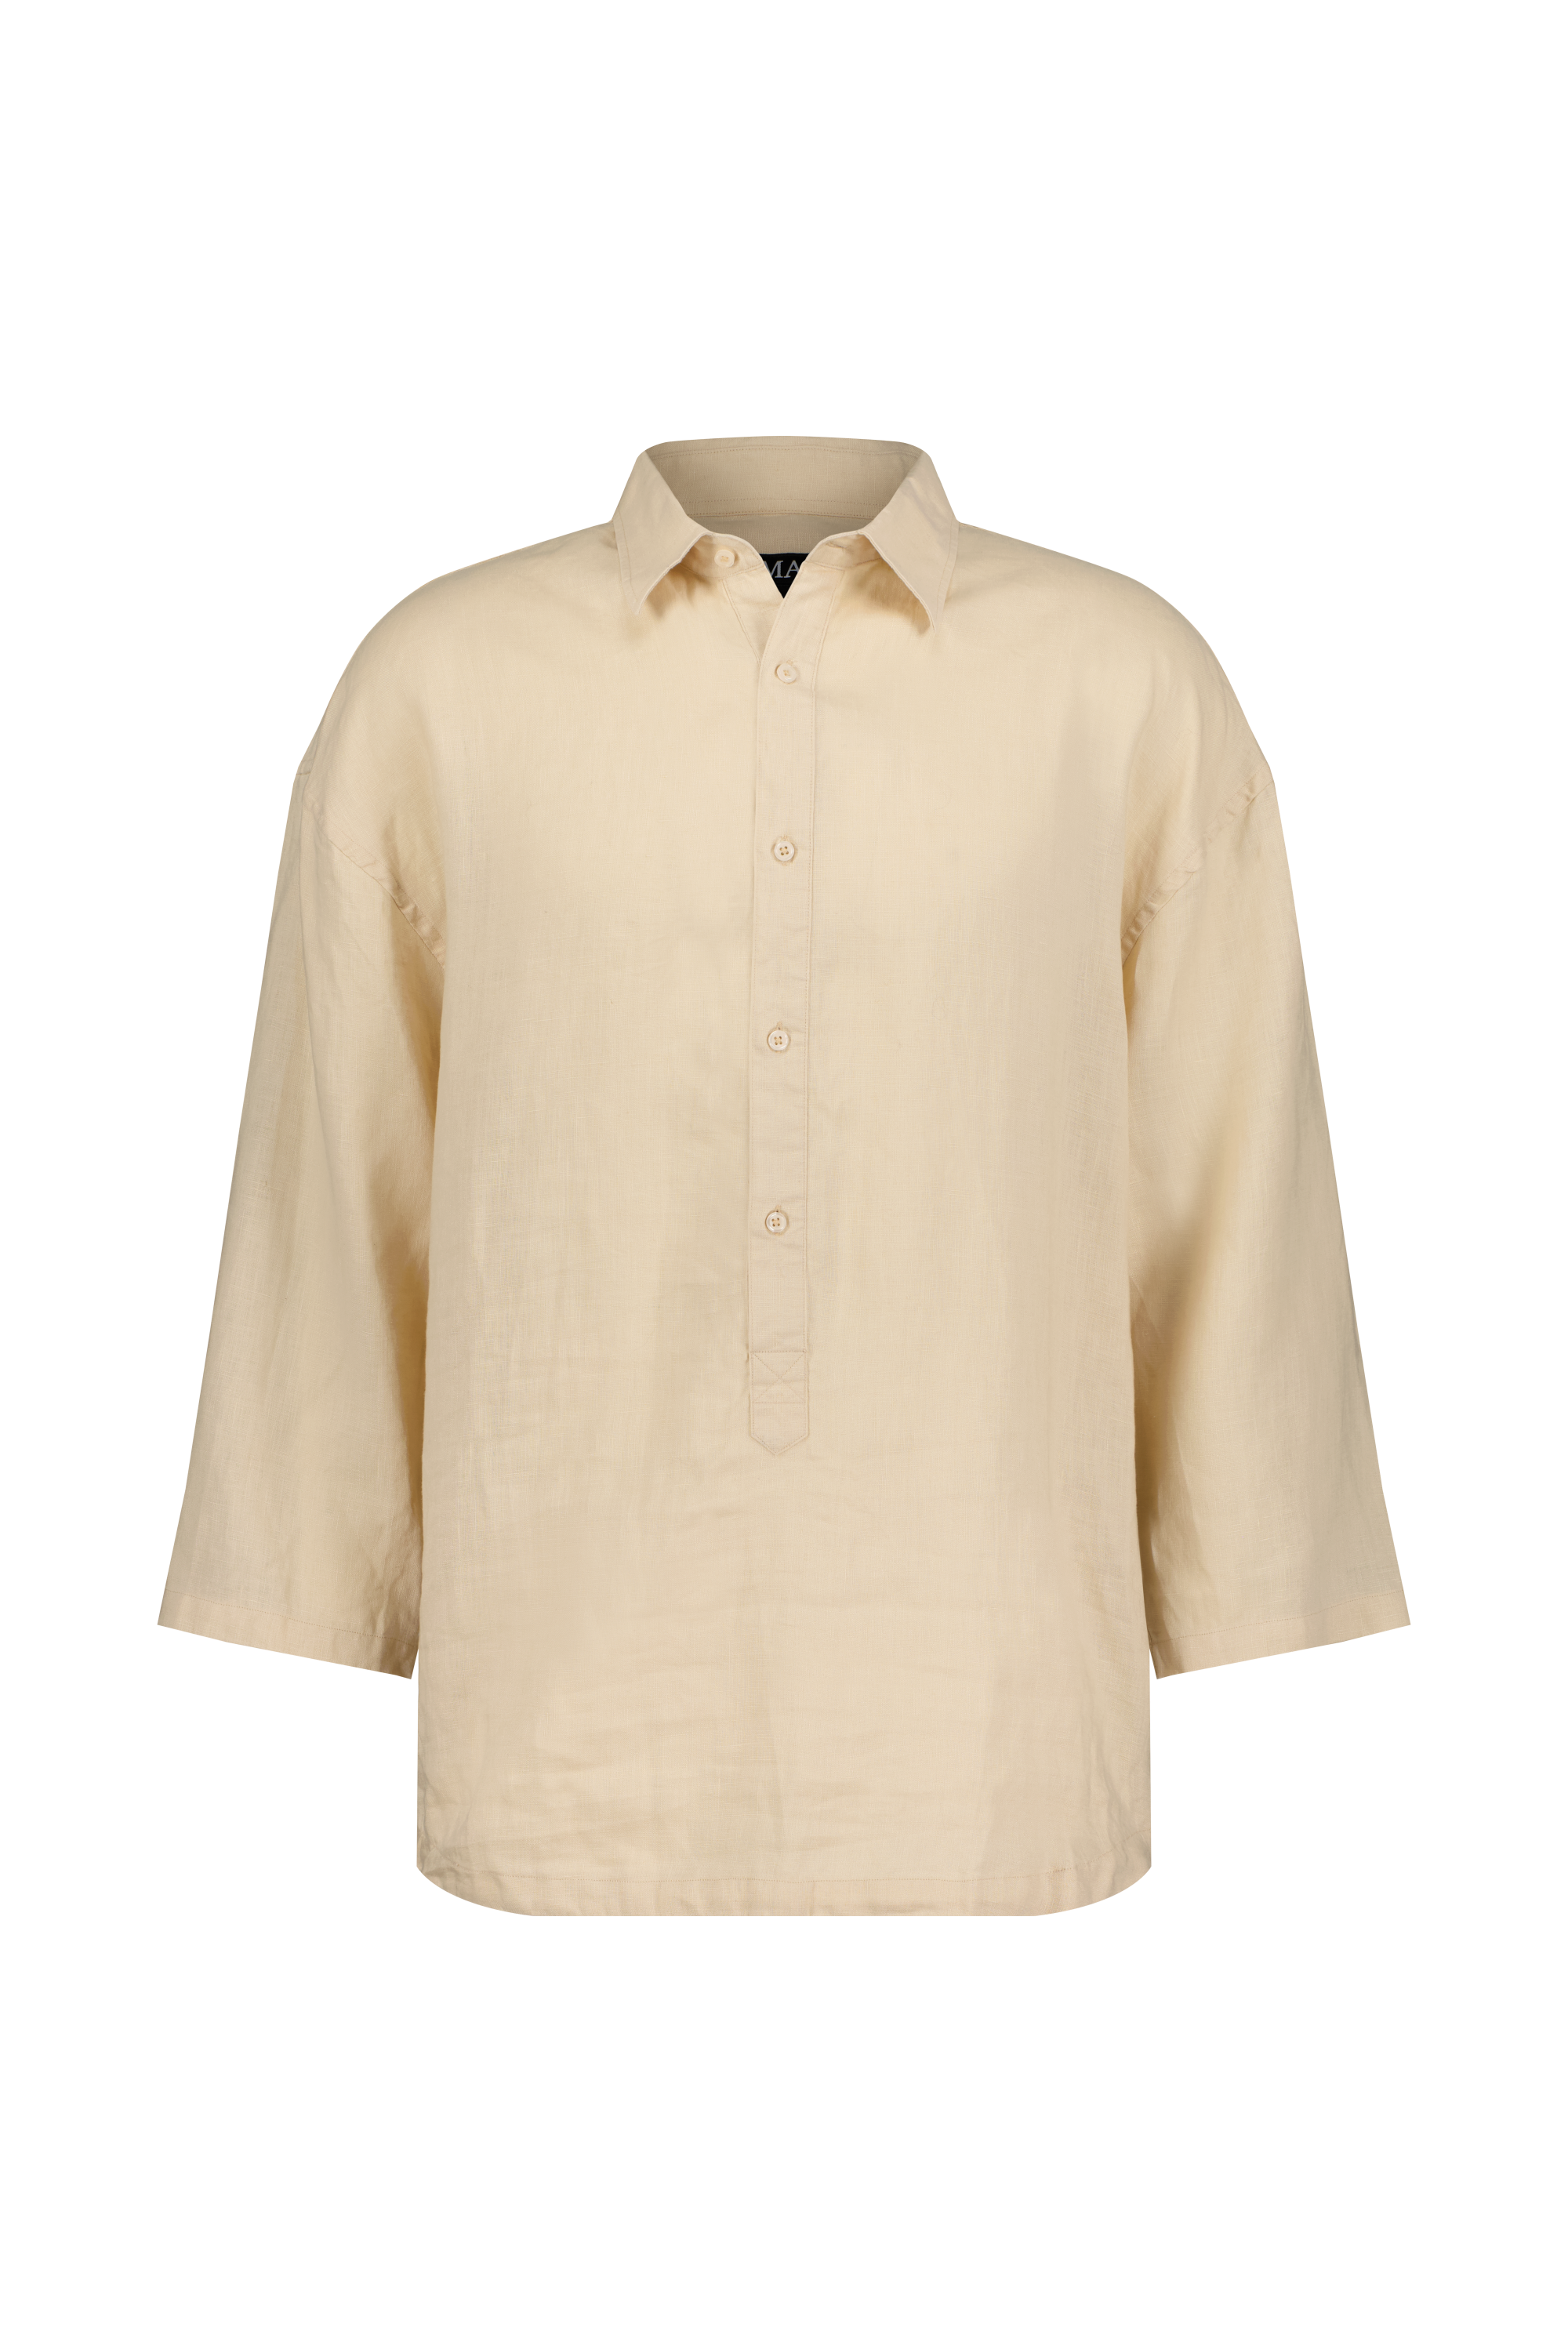  Nomadik Hybrid-Shirt: formelle Eleganz und Bequemlichkeit vereint. Perfekt für heiße Sommertage mit luftigem Leinenstoff und raffinierten Details.